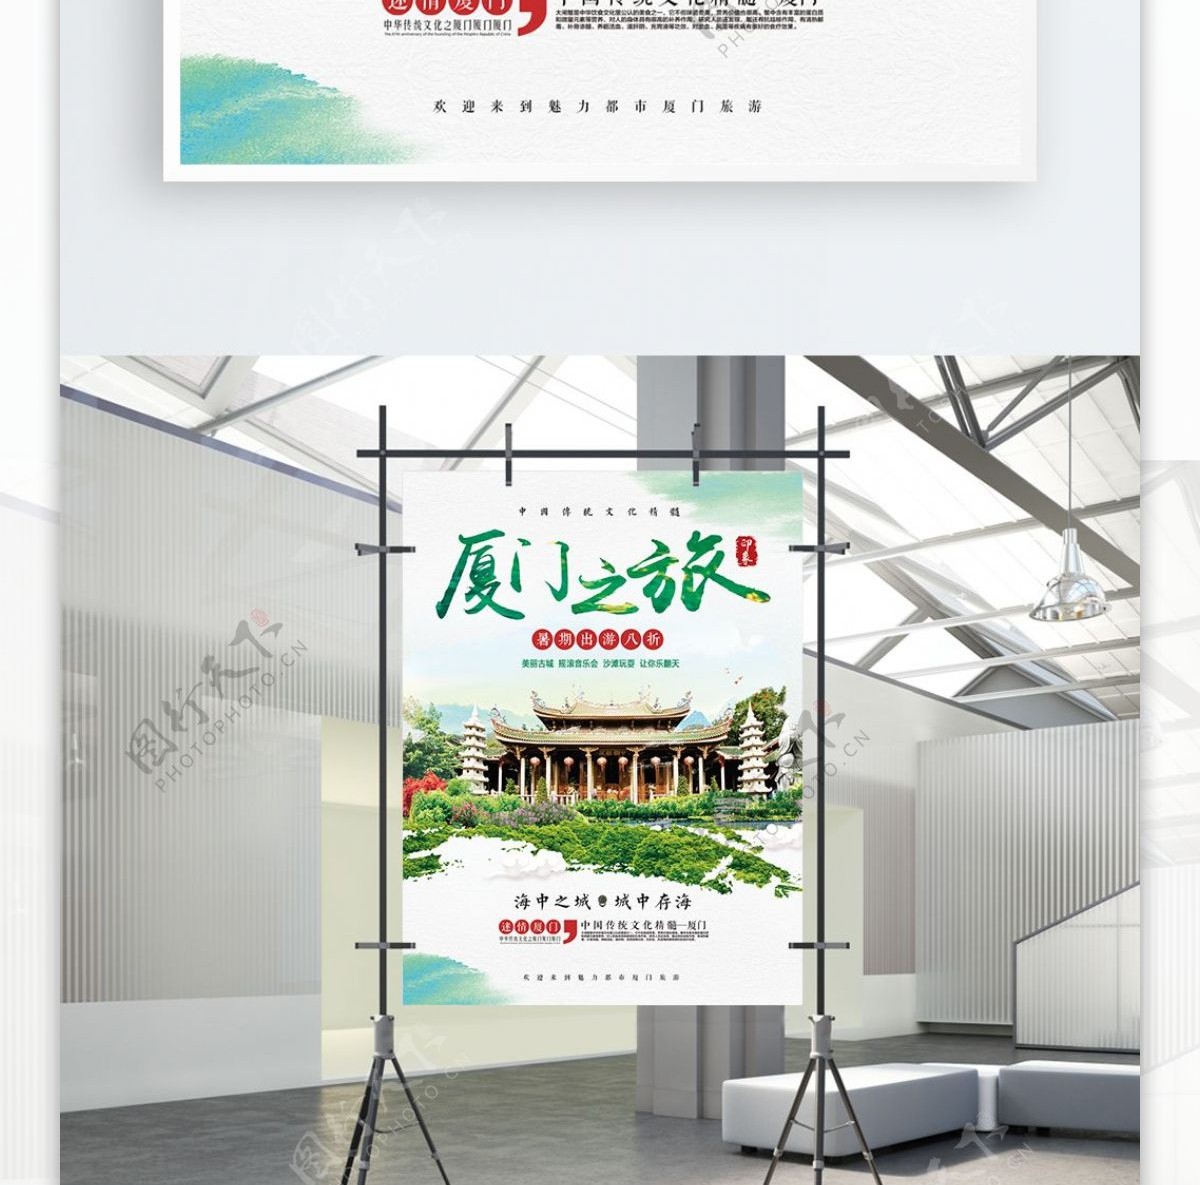 绿色清新夏季暑假游厦门之旅宣传海报